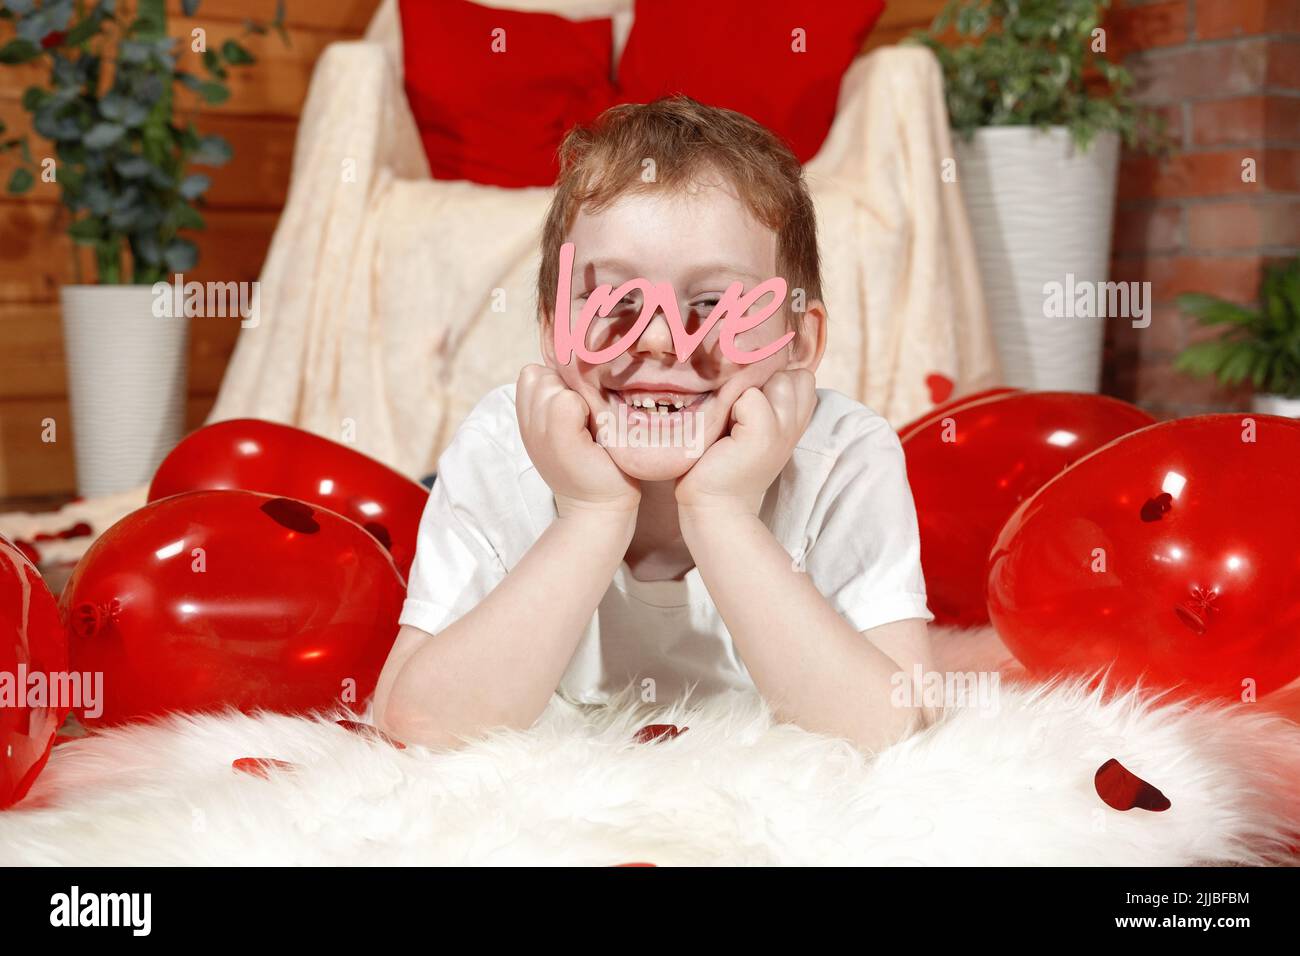 Valentinstag Kinder oder Kinder. Niedlichen fröhlichen kleinen Jungen mit roten Ballons in Form eines Herzens und Text Liebe in Form einer Brille, auf Valentine' Stockfoto